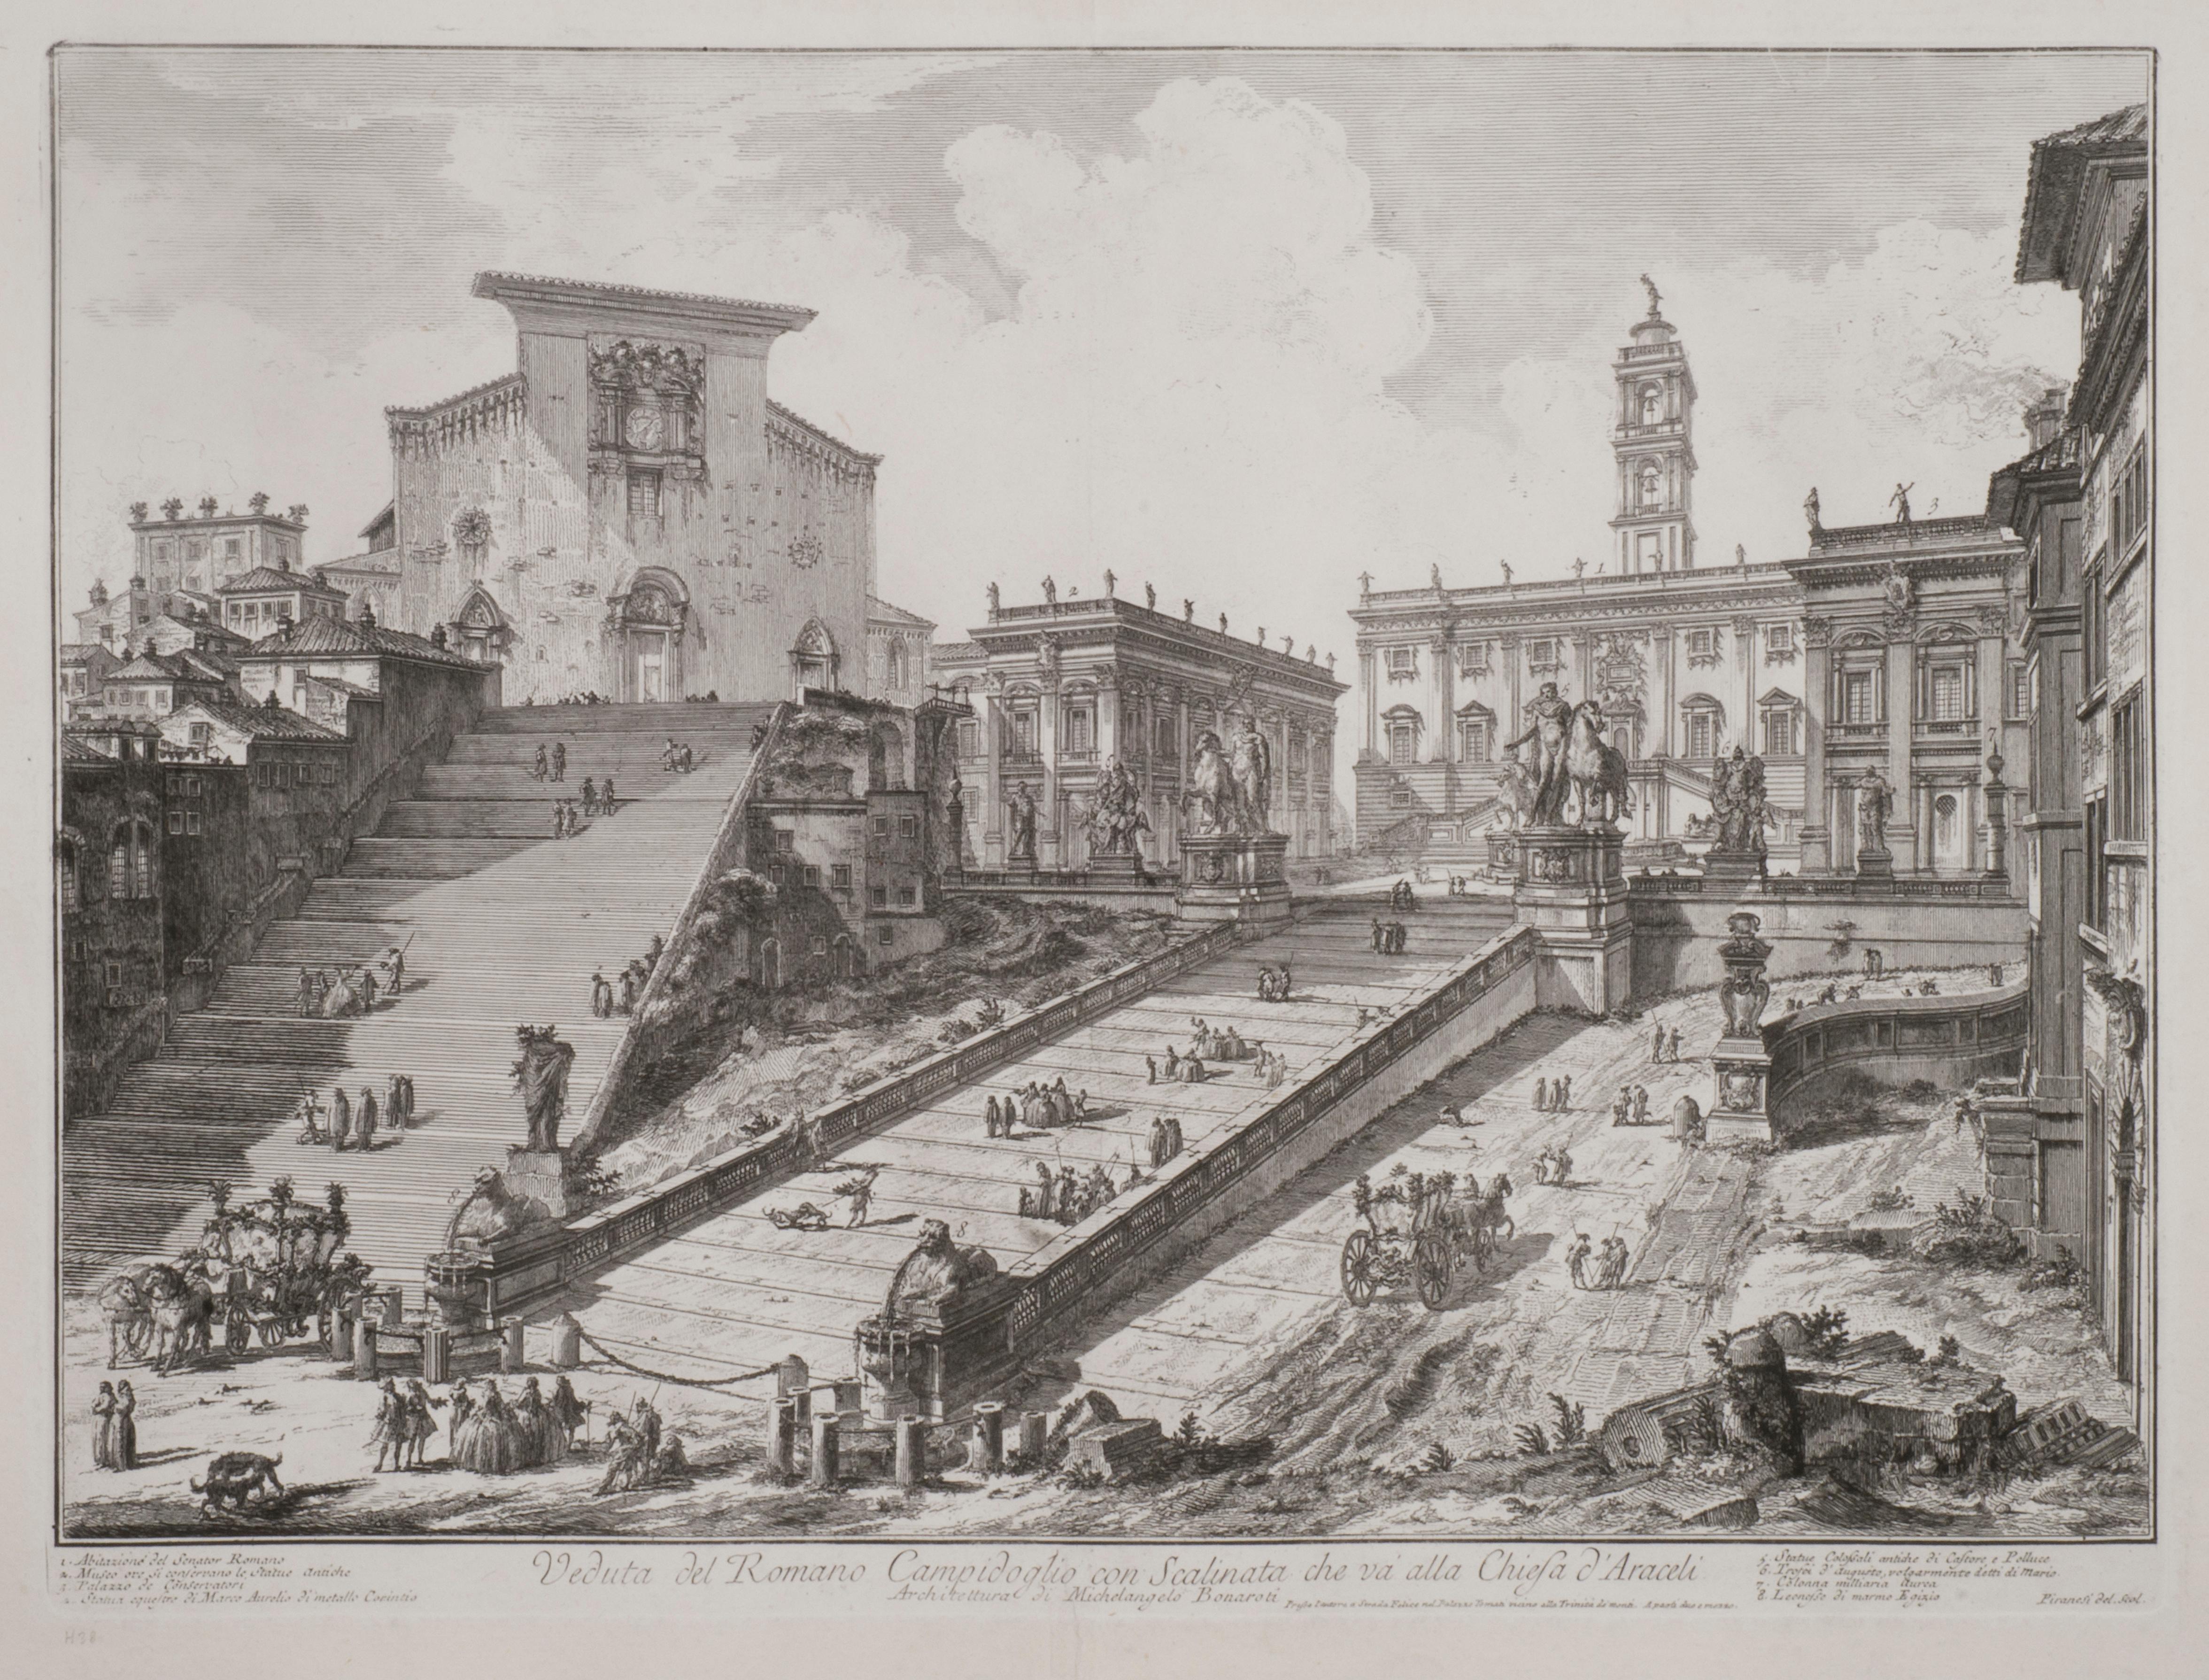 Giovanni Battista Piranesi Landscape Print - Veduta del Romano Camipidpglio con scalinata che va alla chisea d’Araceli (The C